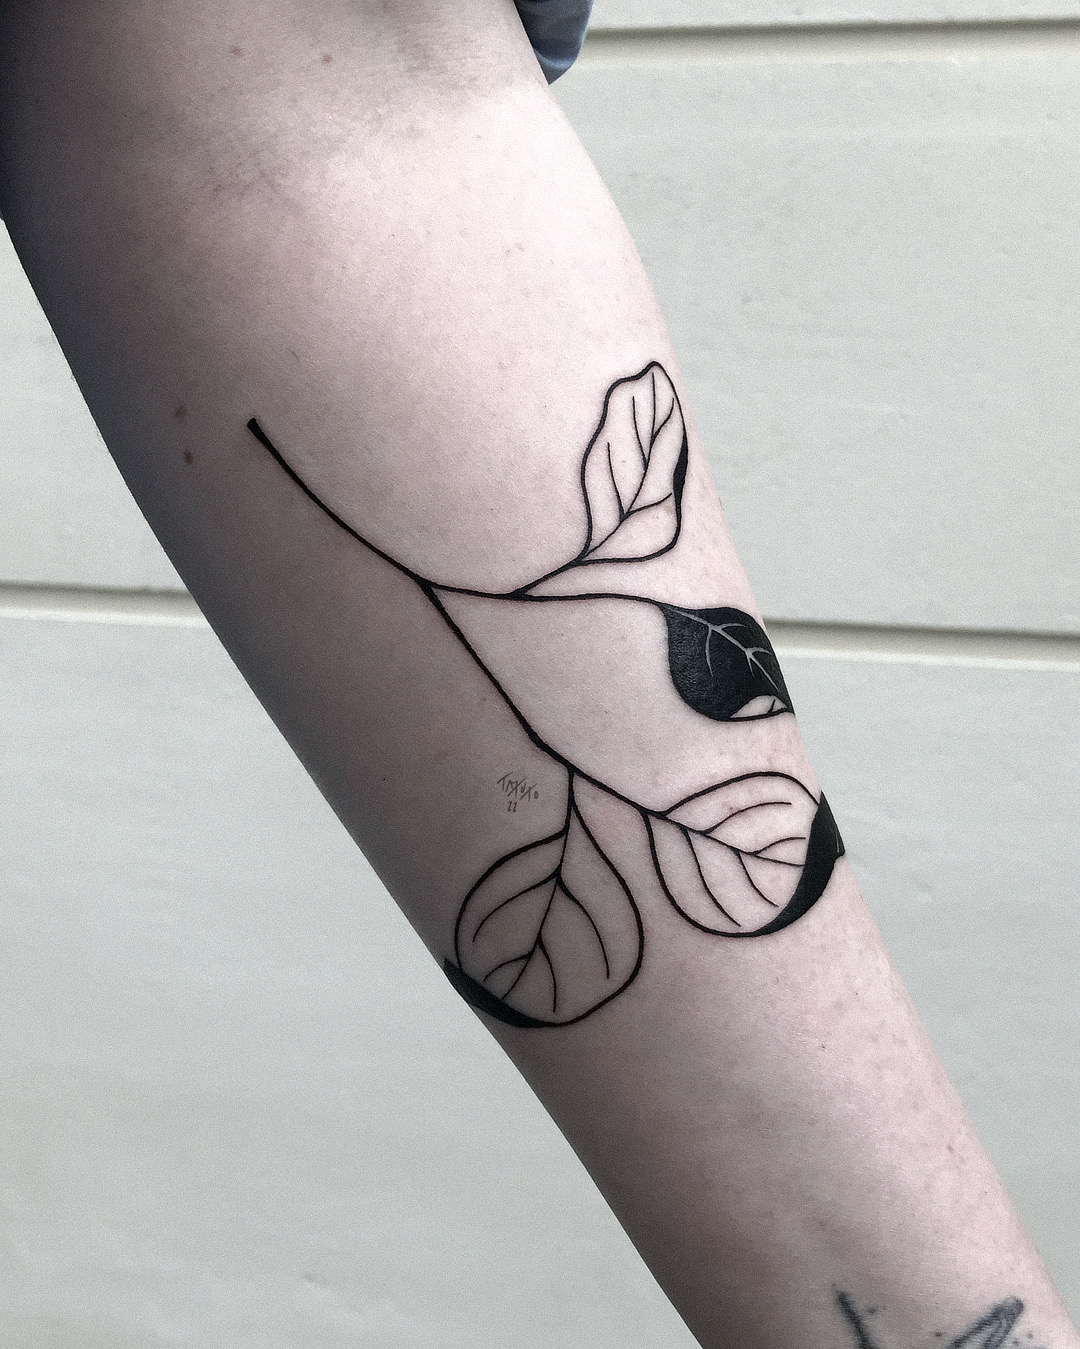 nico-tatuto-tattoo-bordeaux-flash-bastide-tatoueur-feuille-branche-vegetal-japonais-japanese-black-fineline-floral-botanical-meilleur